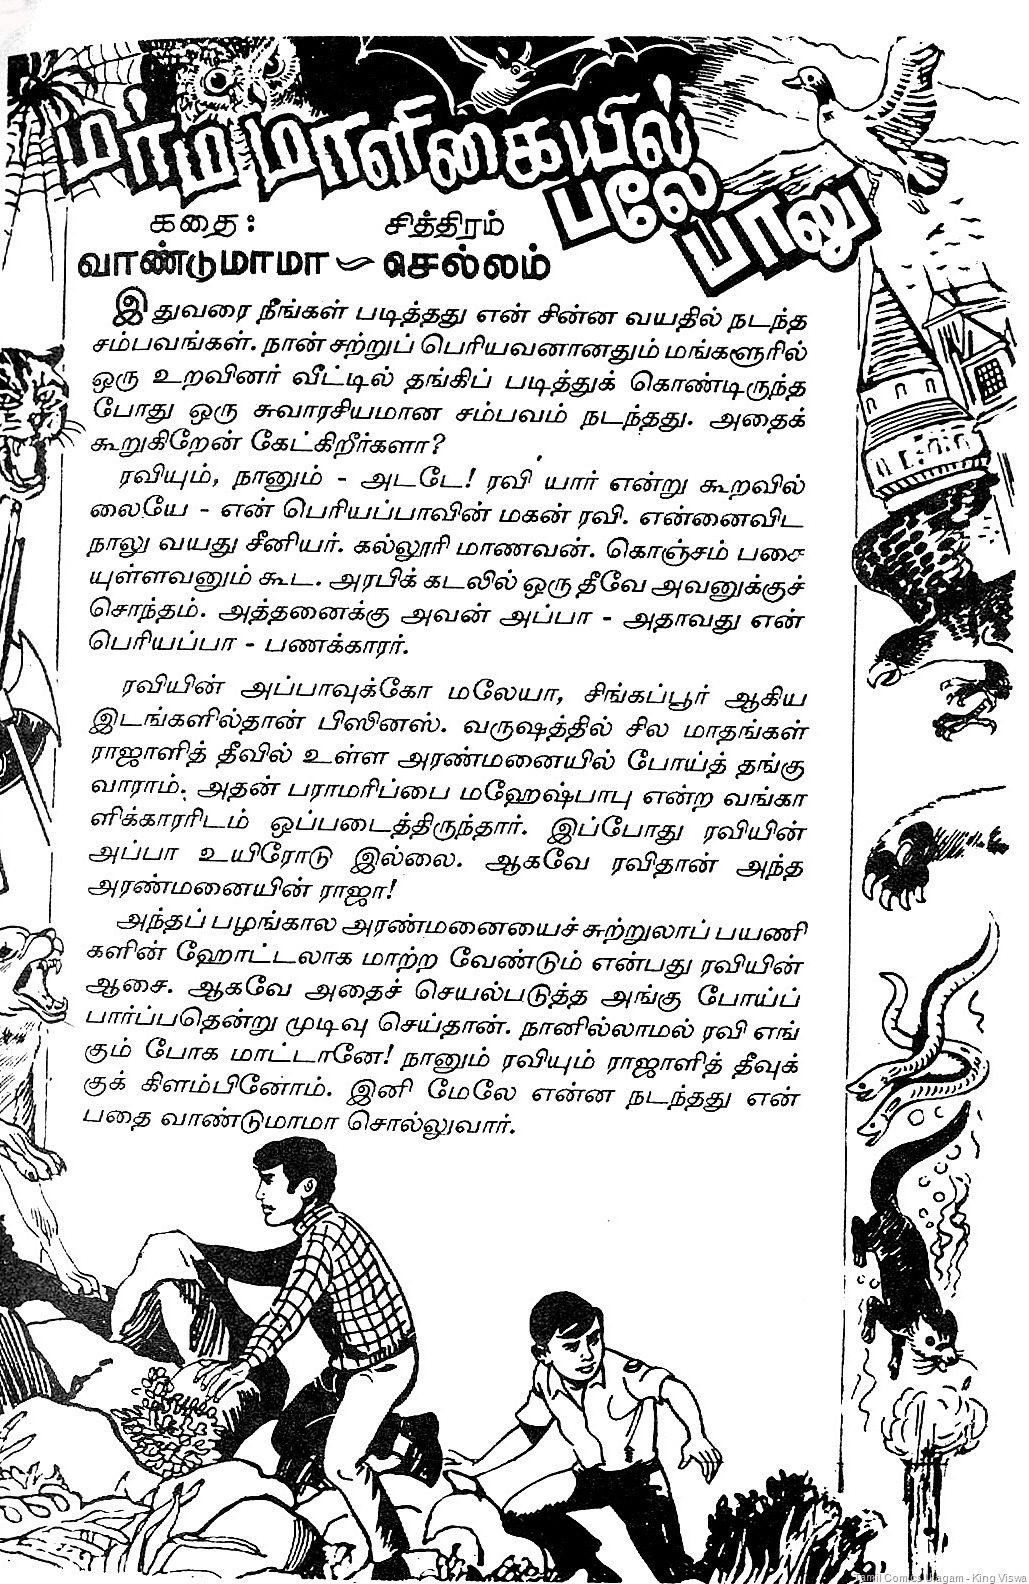 [Marma Maligaiyil Baley Baalu Vaanumaama Collection 1 5th Story Art By Chellam A.jpg]